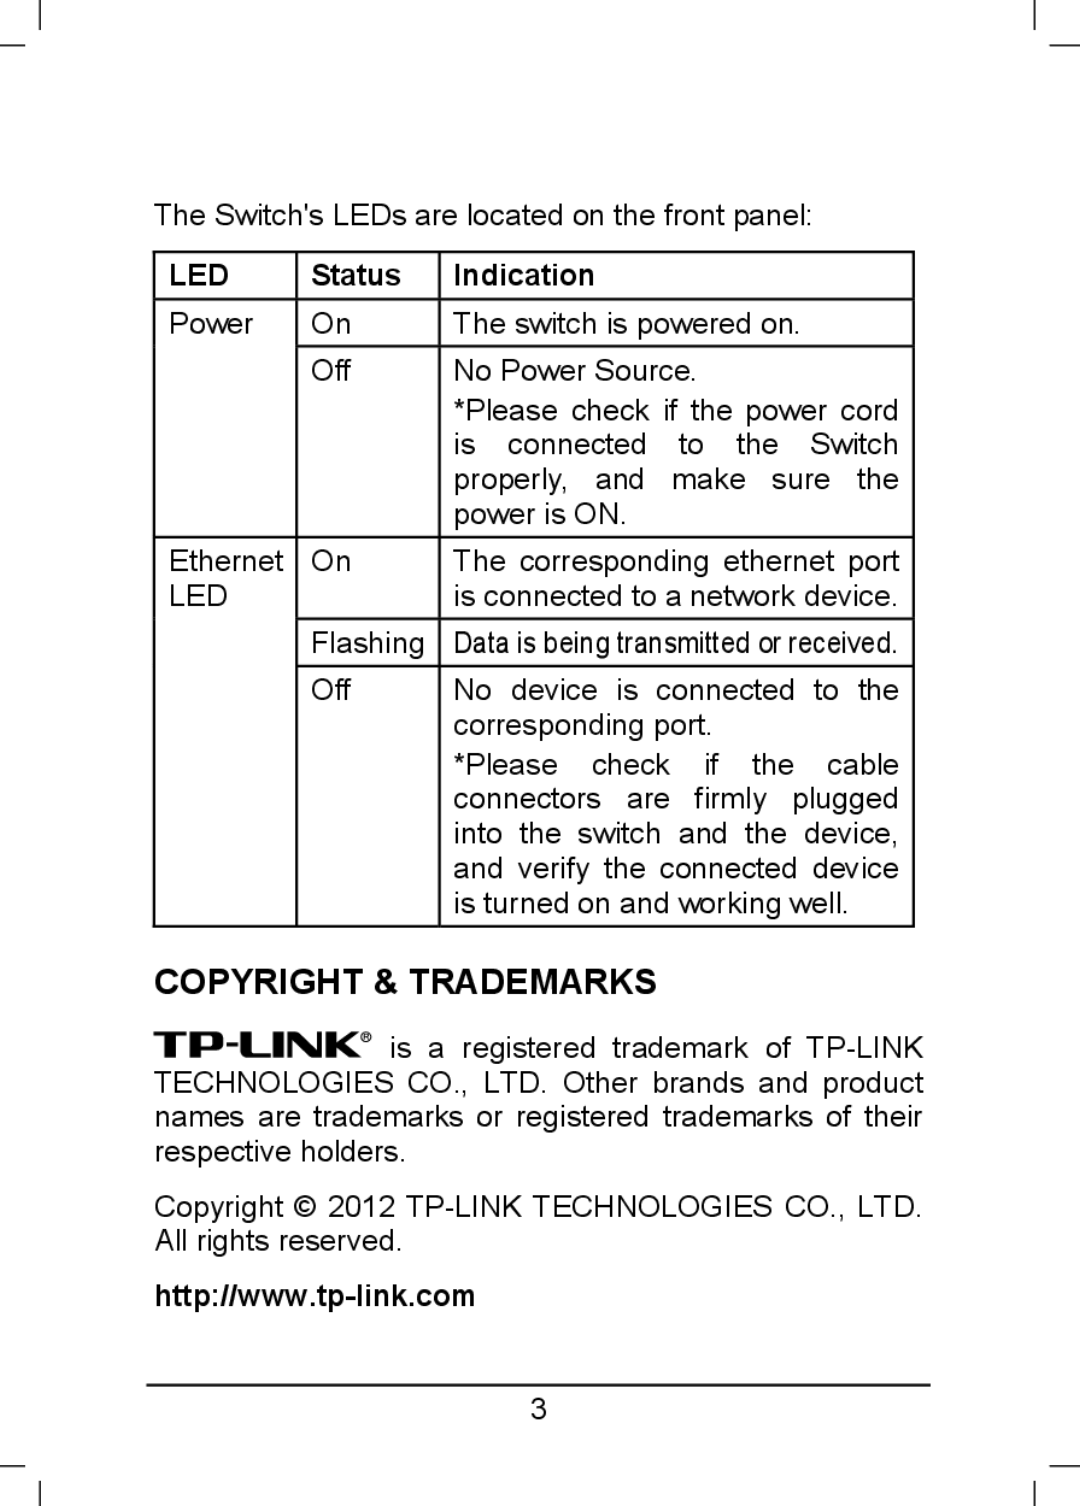 TP-Link TL-SF1005D, TL-SF1008D, TL-SF1016D manual Copyright & Trademarks, Status, Indication 